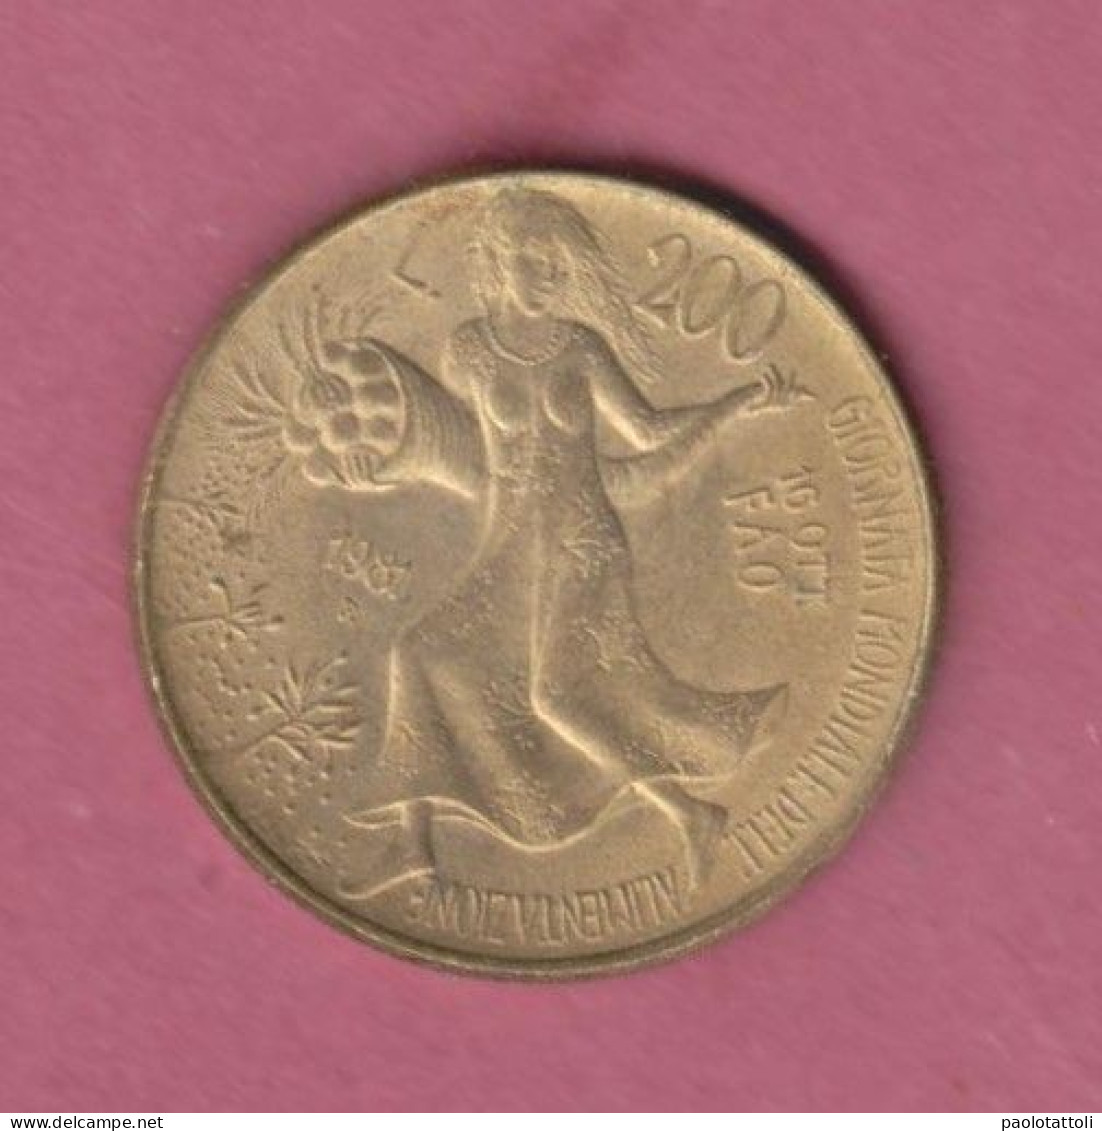 Italia, 1981- 200 Lire. Circulating Commemorative Coin-Bronzital- Obverse Villa Lubin. Reverse Young Female - 200 Lire